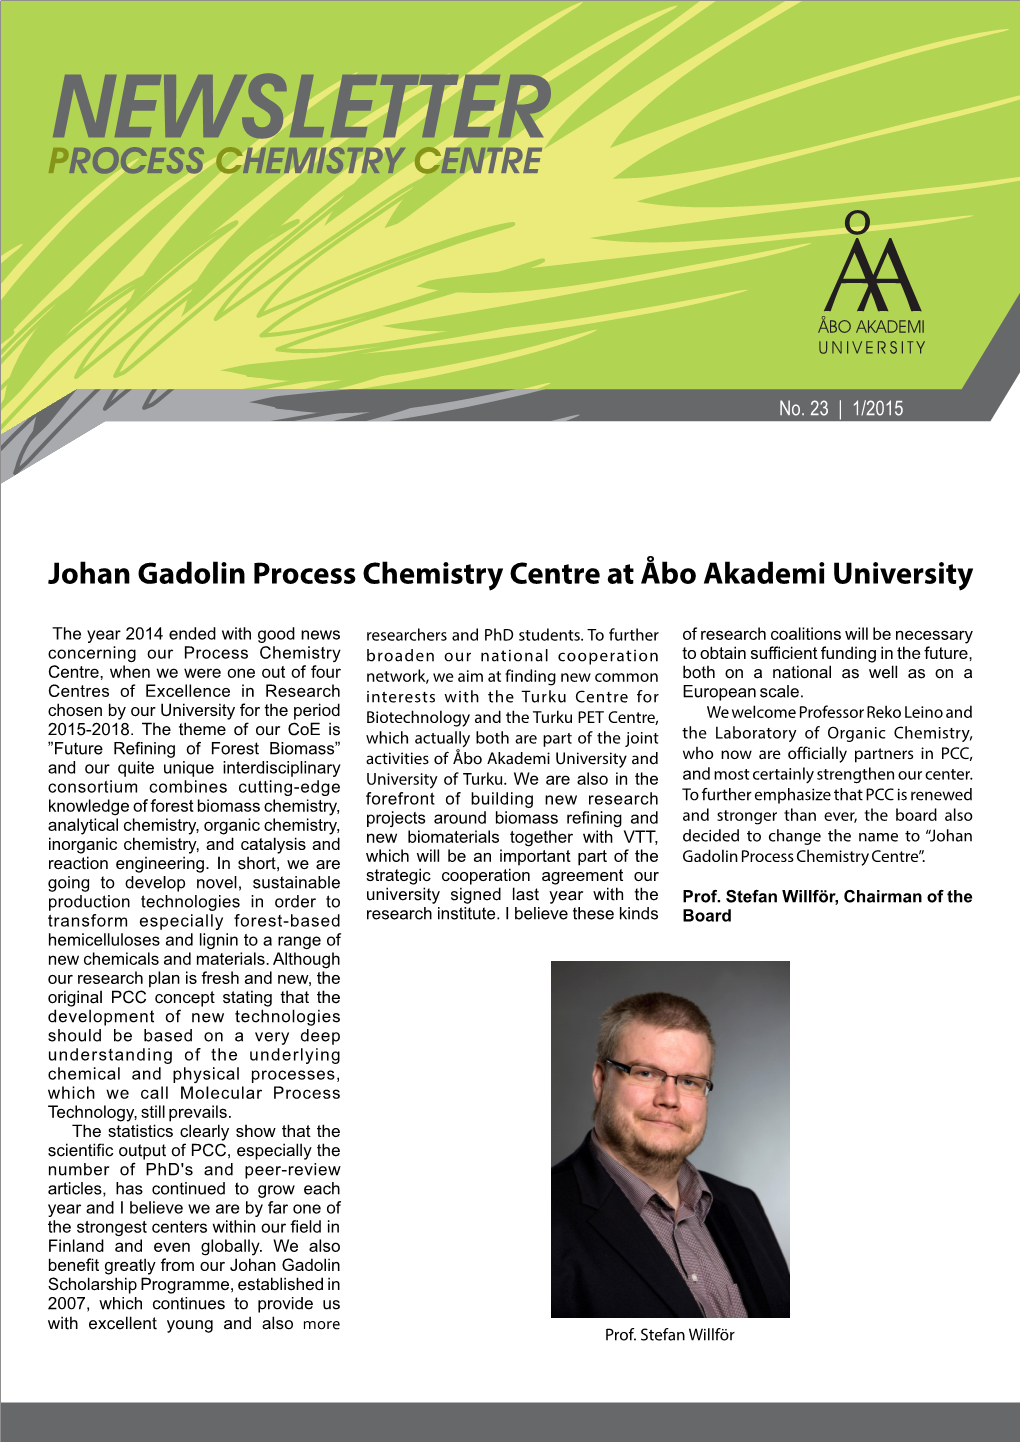 Johan Gadolin Process Chemistry Centre at Åbo Akademi University